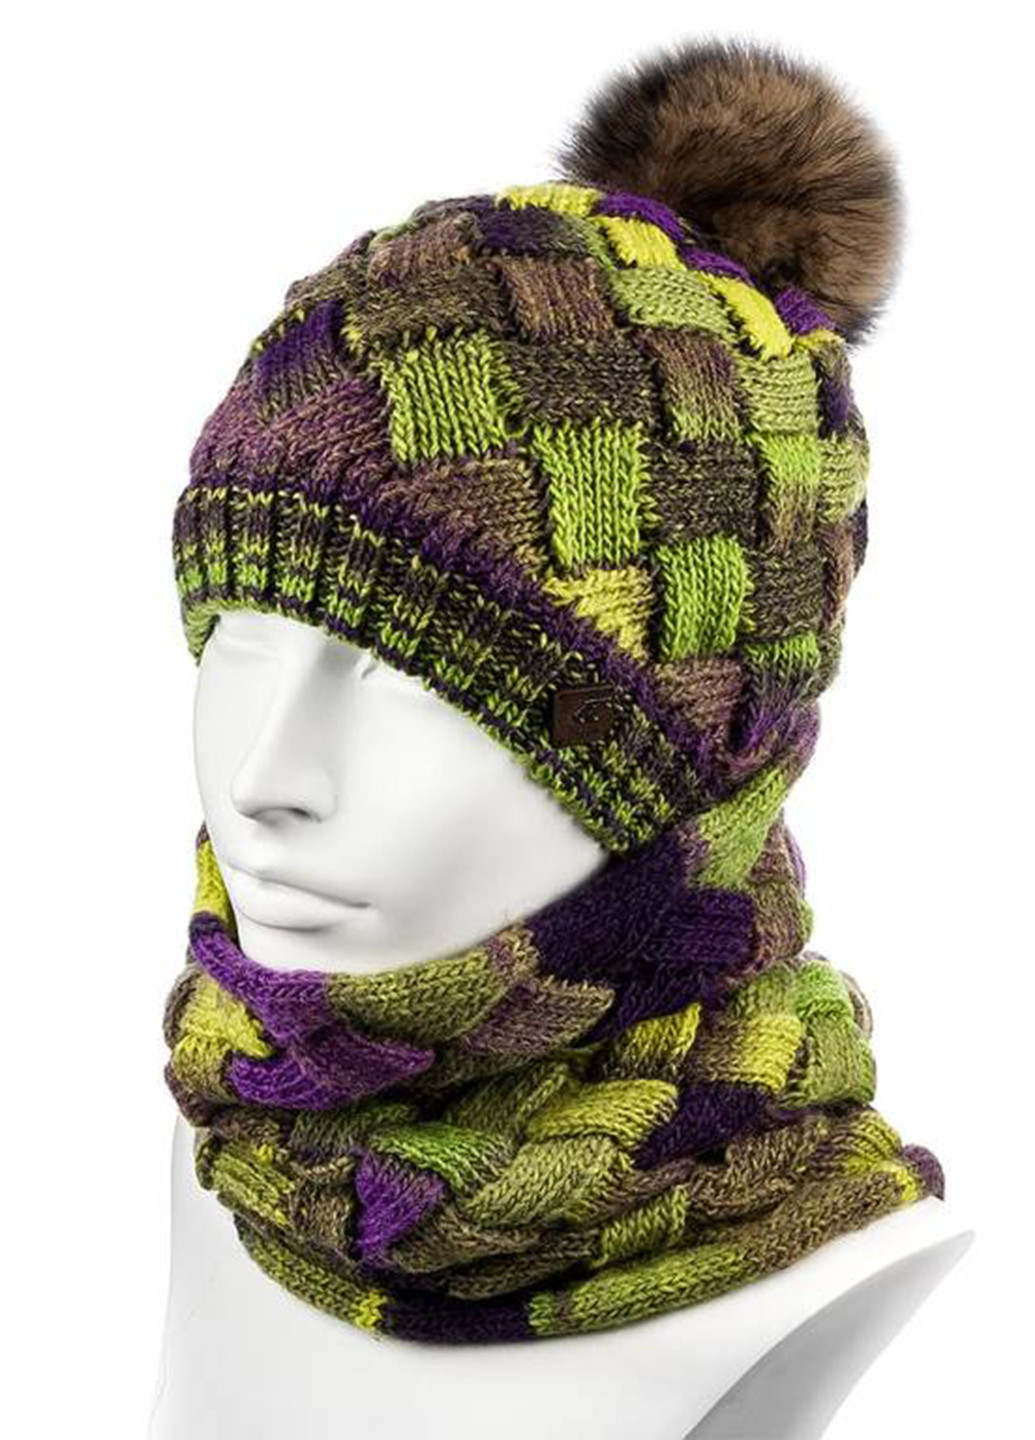 Комбинированный зимний комплект (шапка, шарф) Hattson